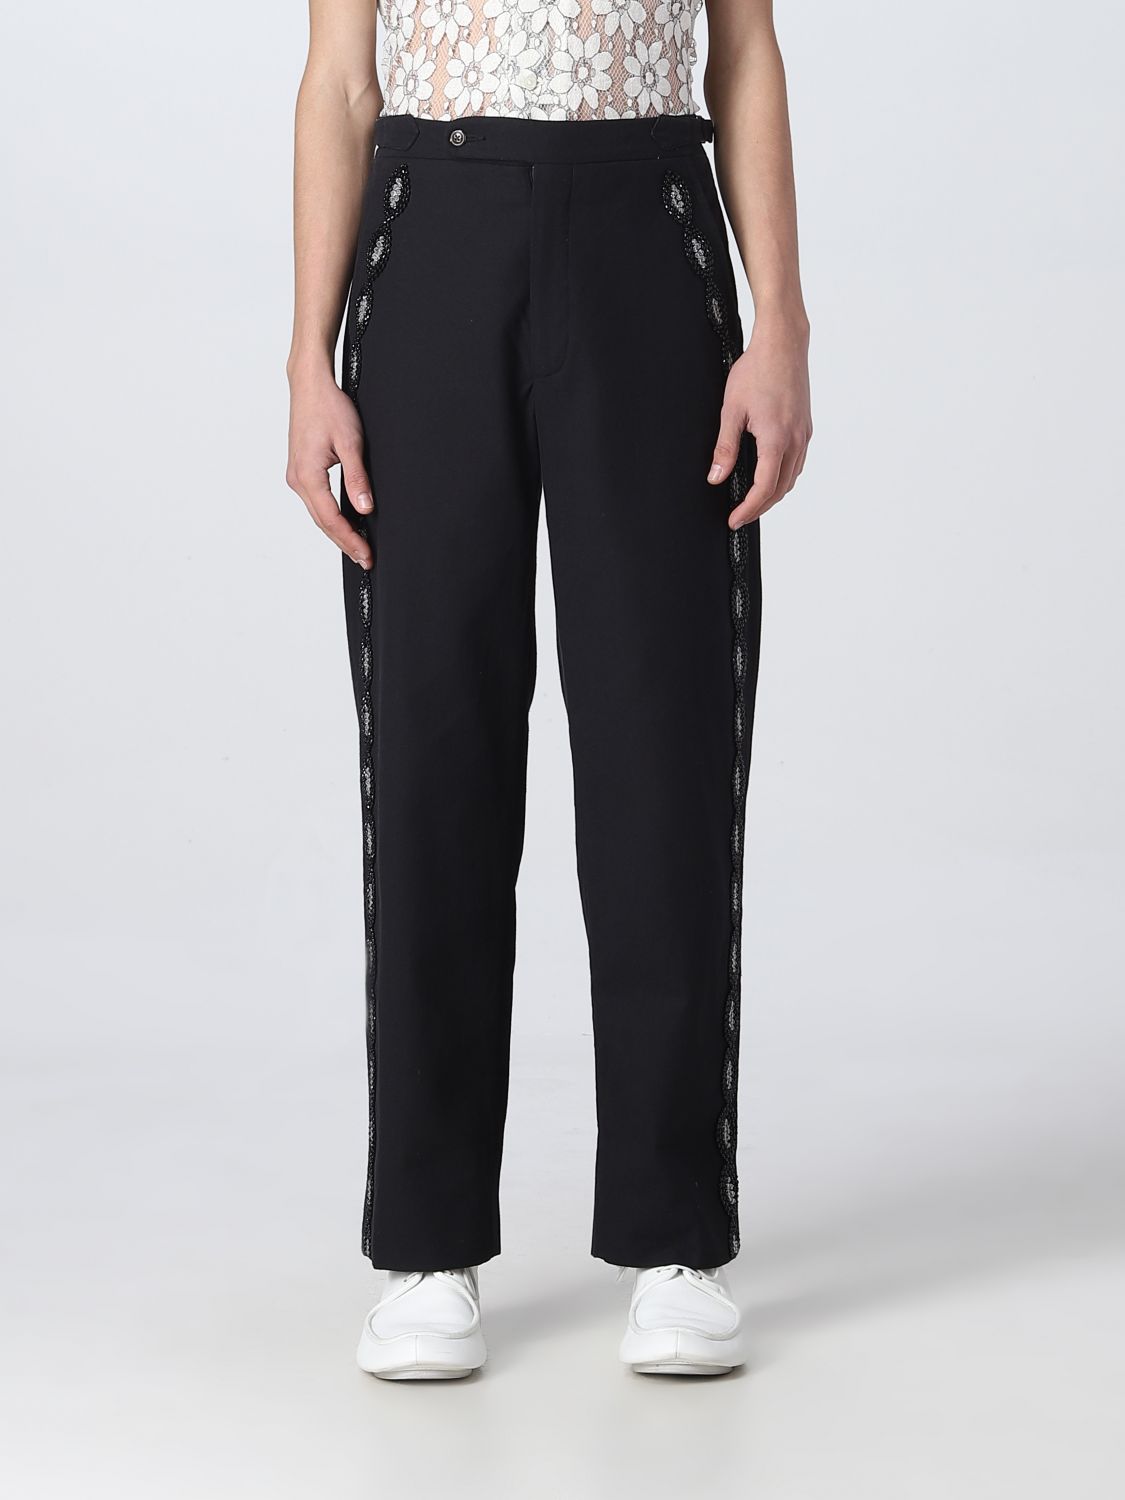 Bode Outlet: pants for man - Black | Bode pants MRBT000002 online on ...